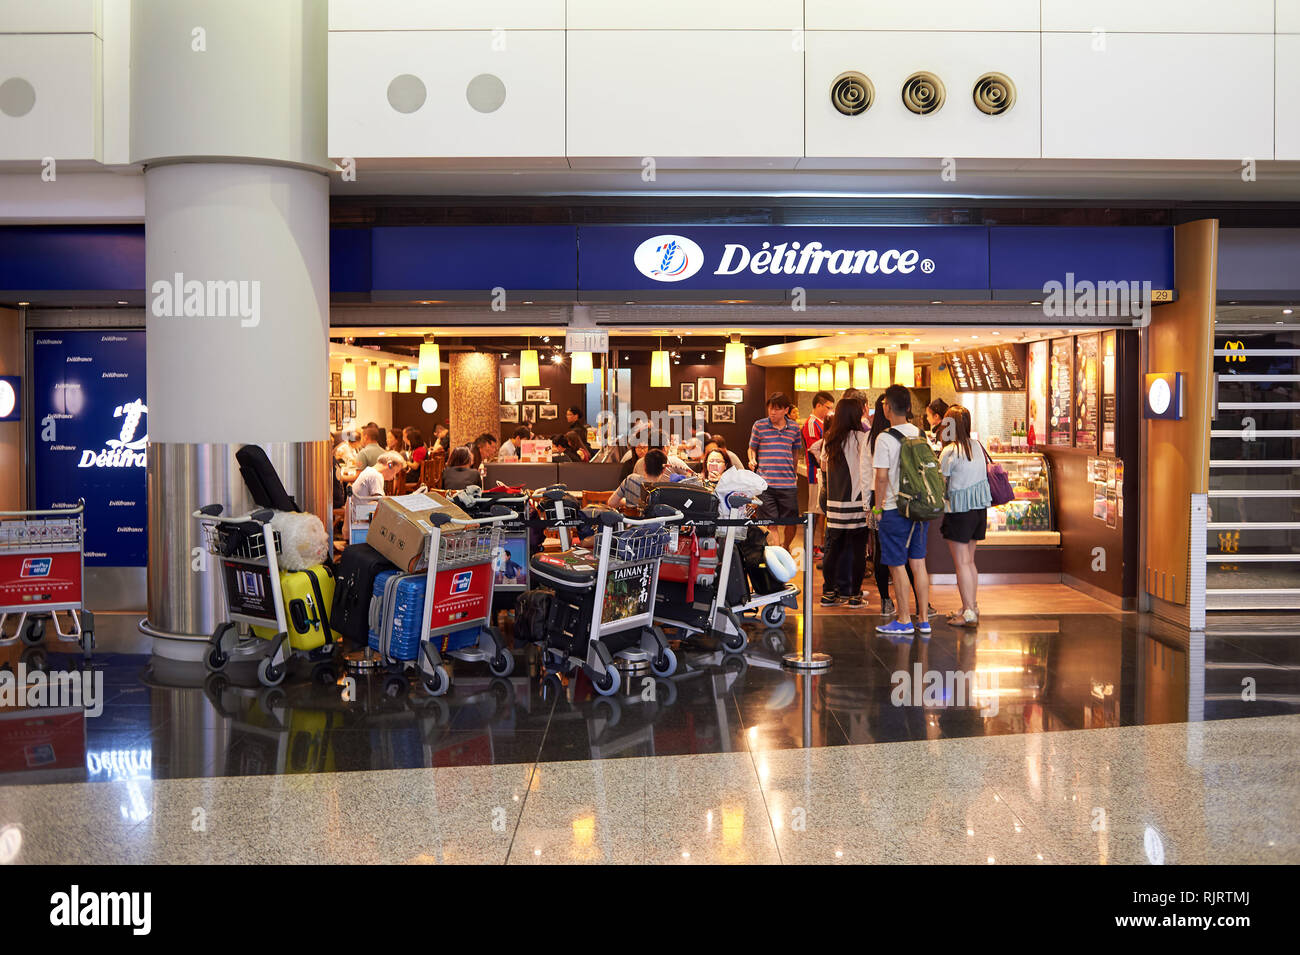 HONG KONG - MAY 06, 2015: Delifrance cafe at Hong Kong Airport. Hong Kong International Airport is the main airport in Hong Kong. It is located on the Stock Photo